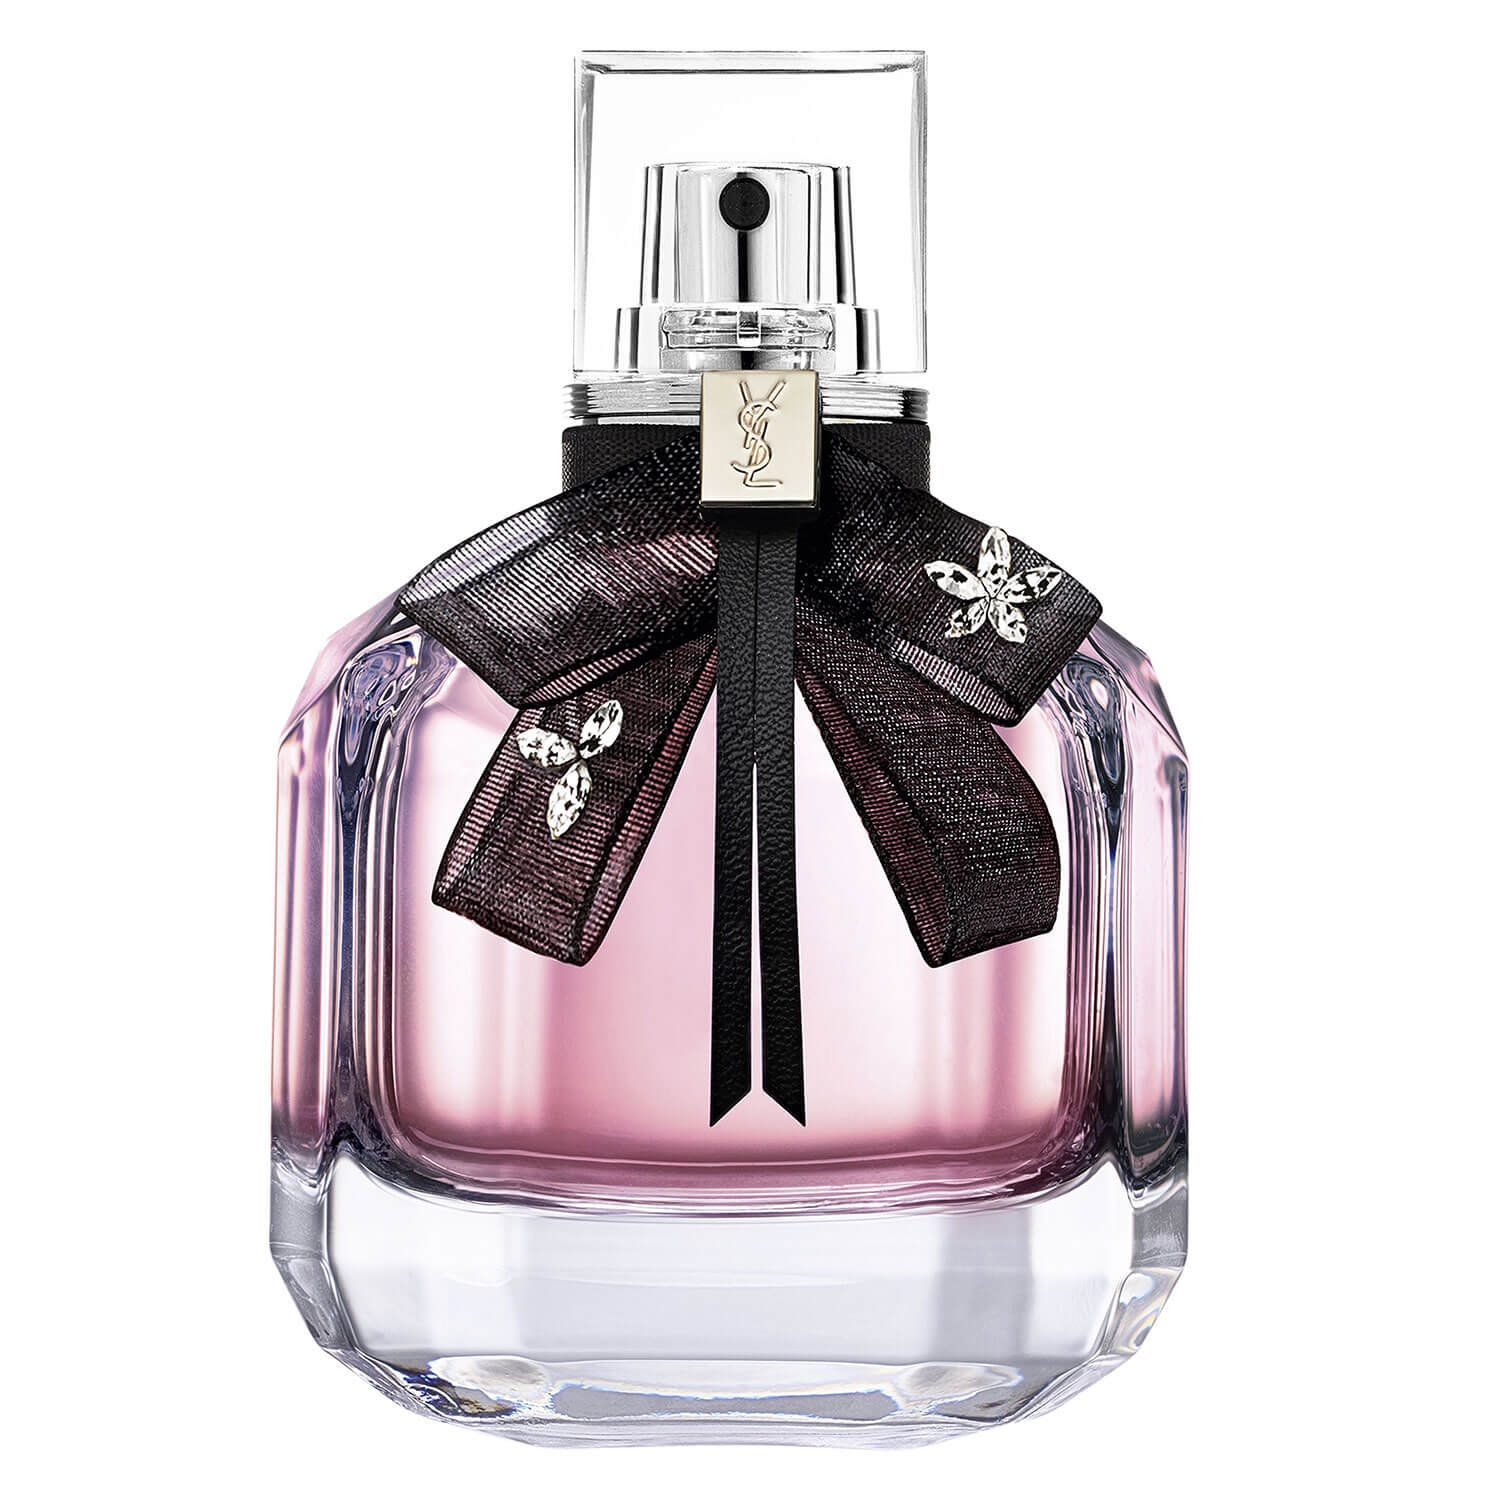 Produktbild von Mon Paris - Floral Eau de Parfum